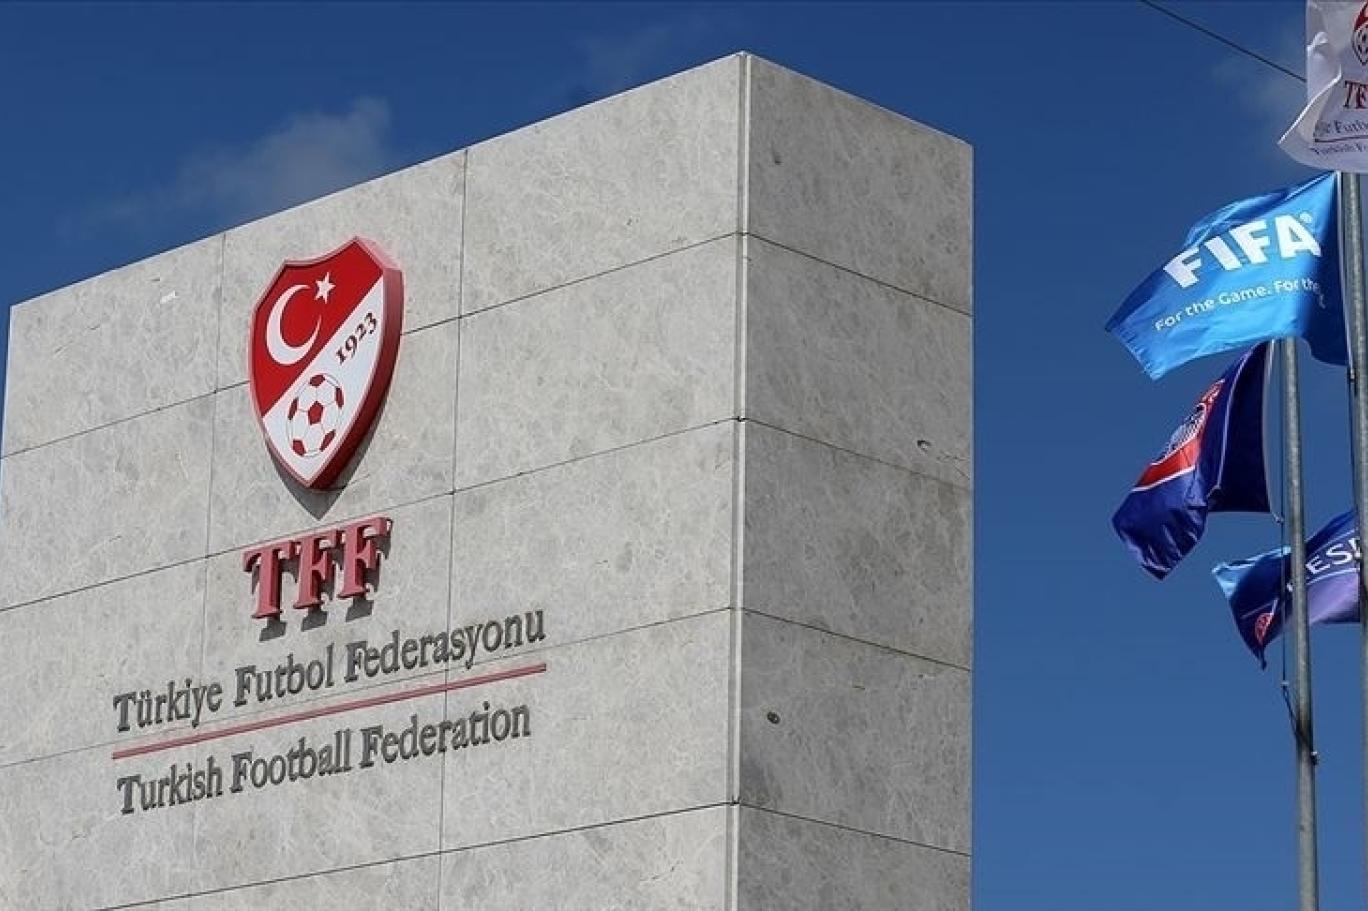 Hakemleri statta rehin alan eski başkan TFF başkanlığına aday oldu! Fenerbahçe taraftarı şok oldu